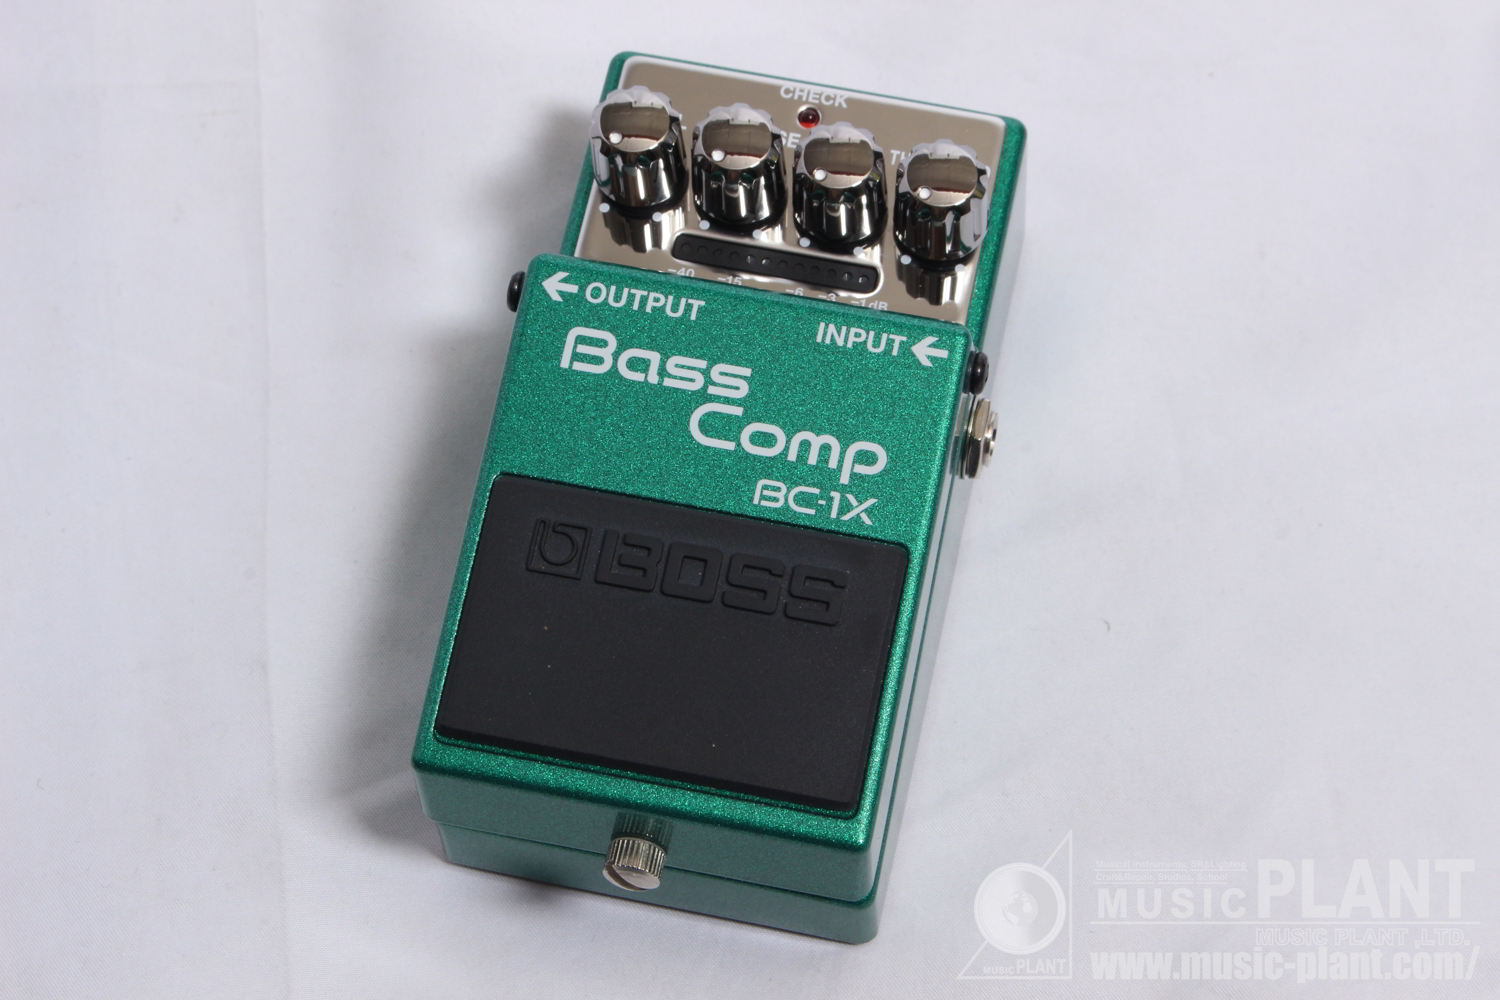 BOSS コンプレッサーBC-1X Bass Comp中古()売却済みです。あしからずご了承ください。 | MUSIC PLANT WEBSHOP